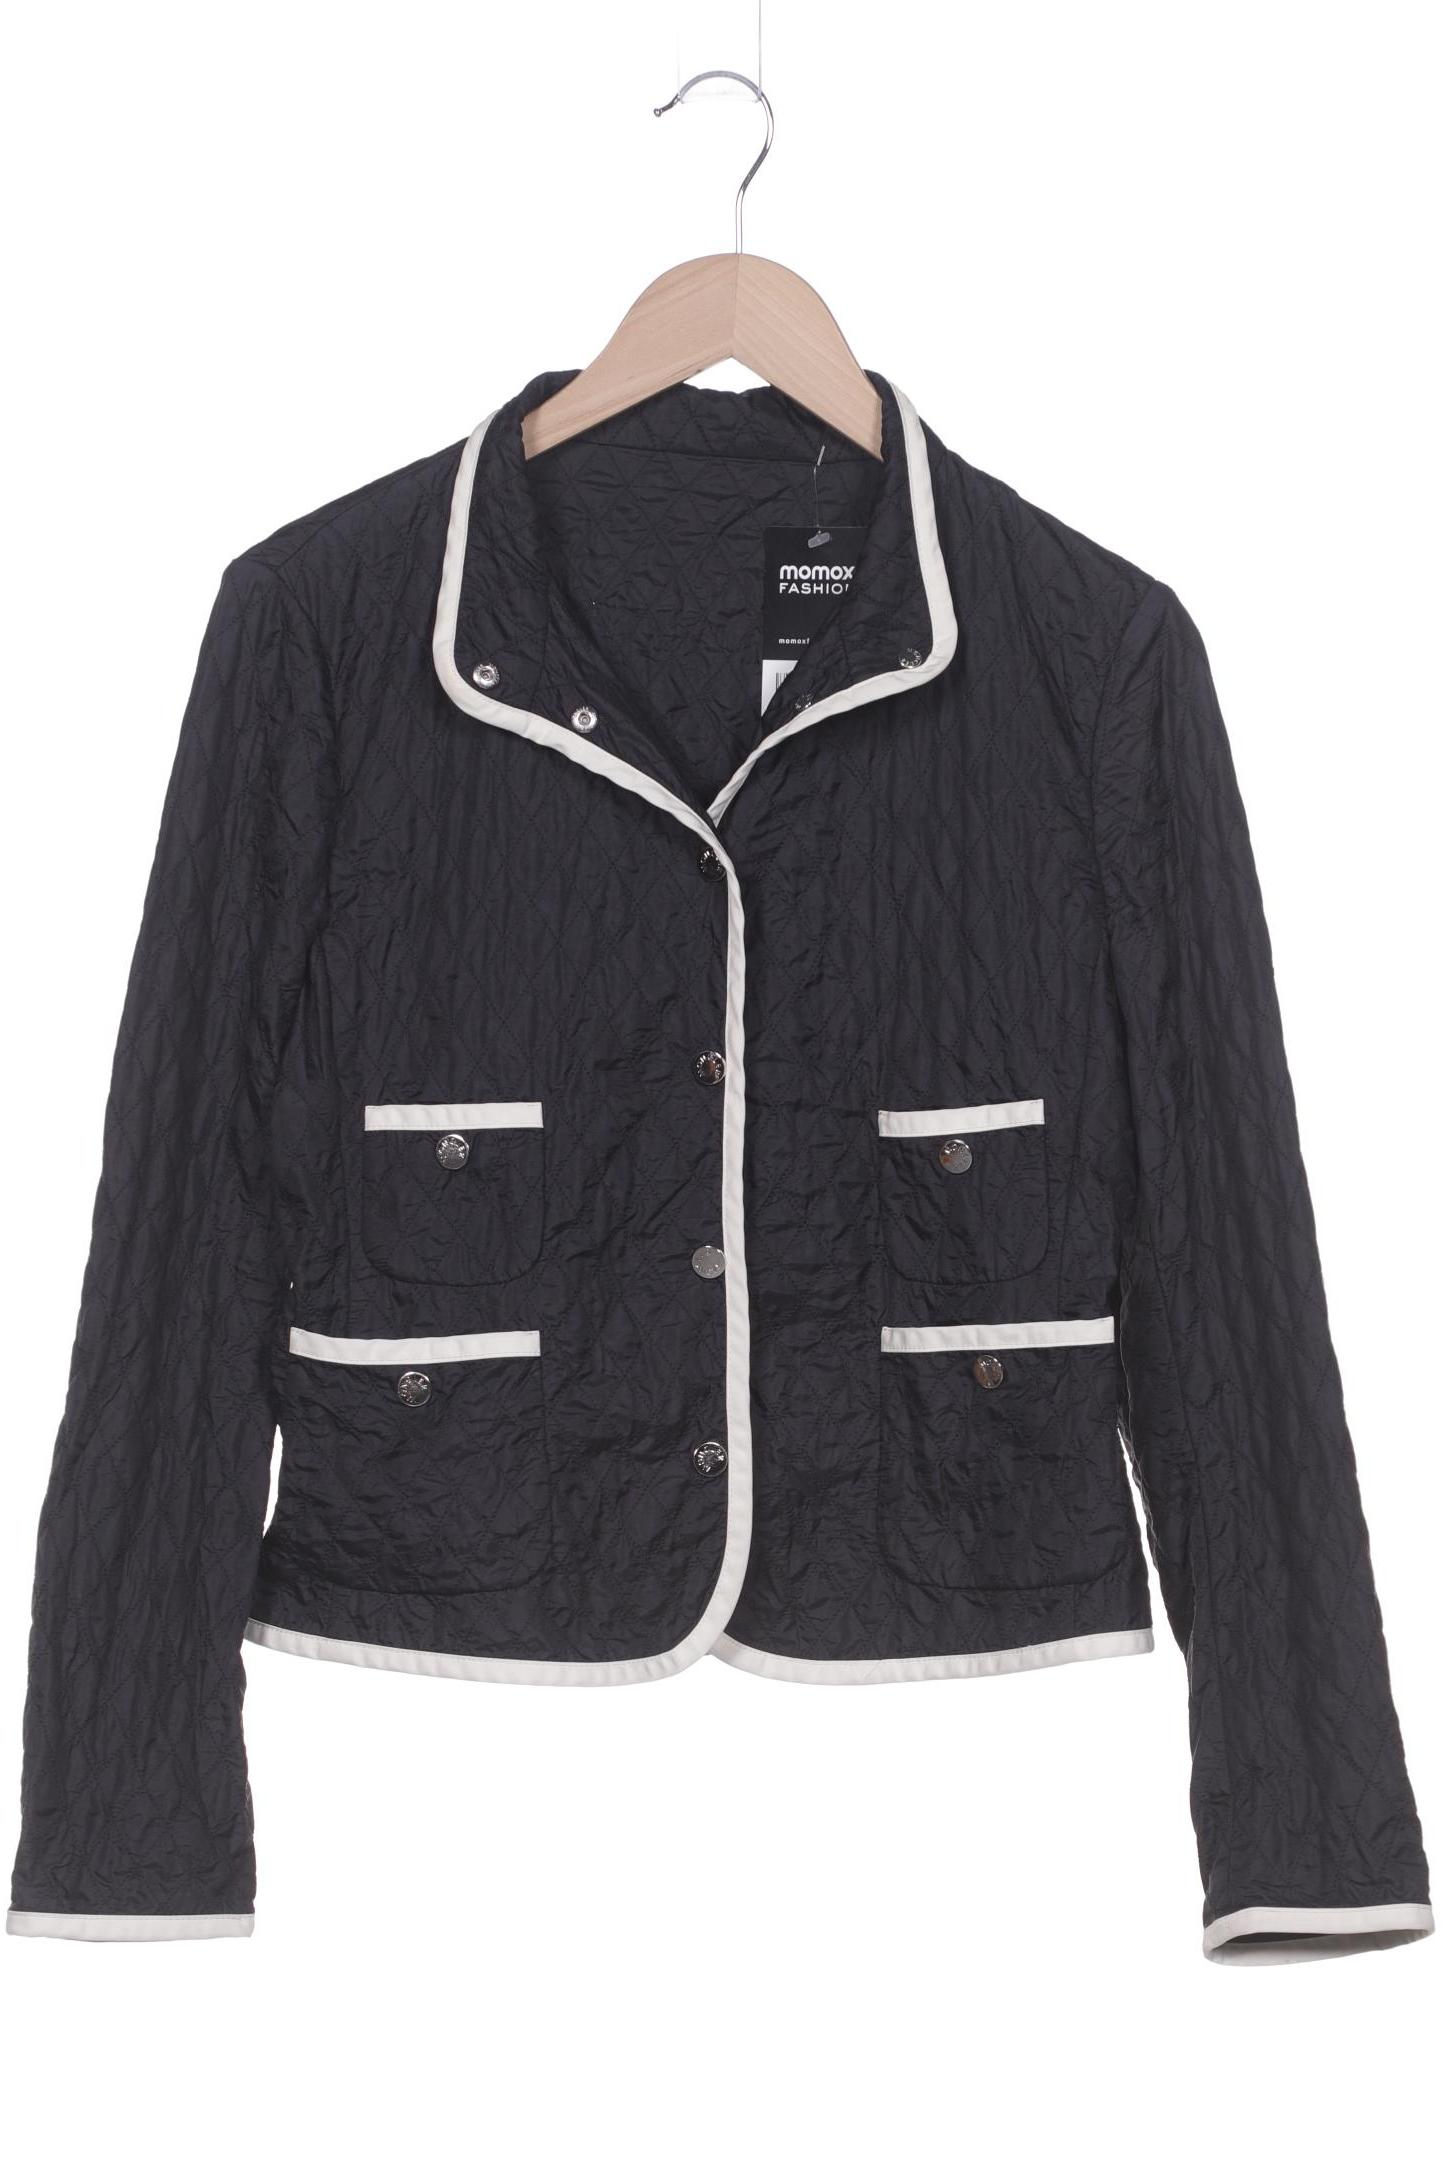 Moncler Damen Jacke, schwarz, Gr. 42 von Moncler